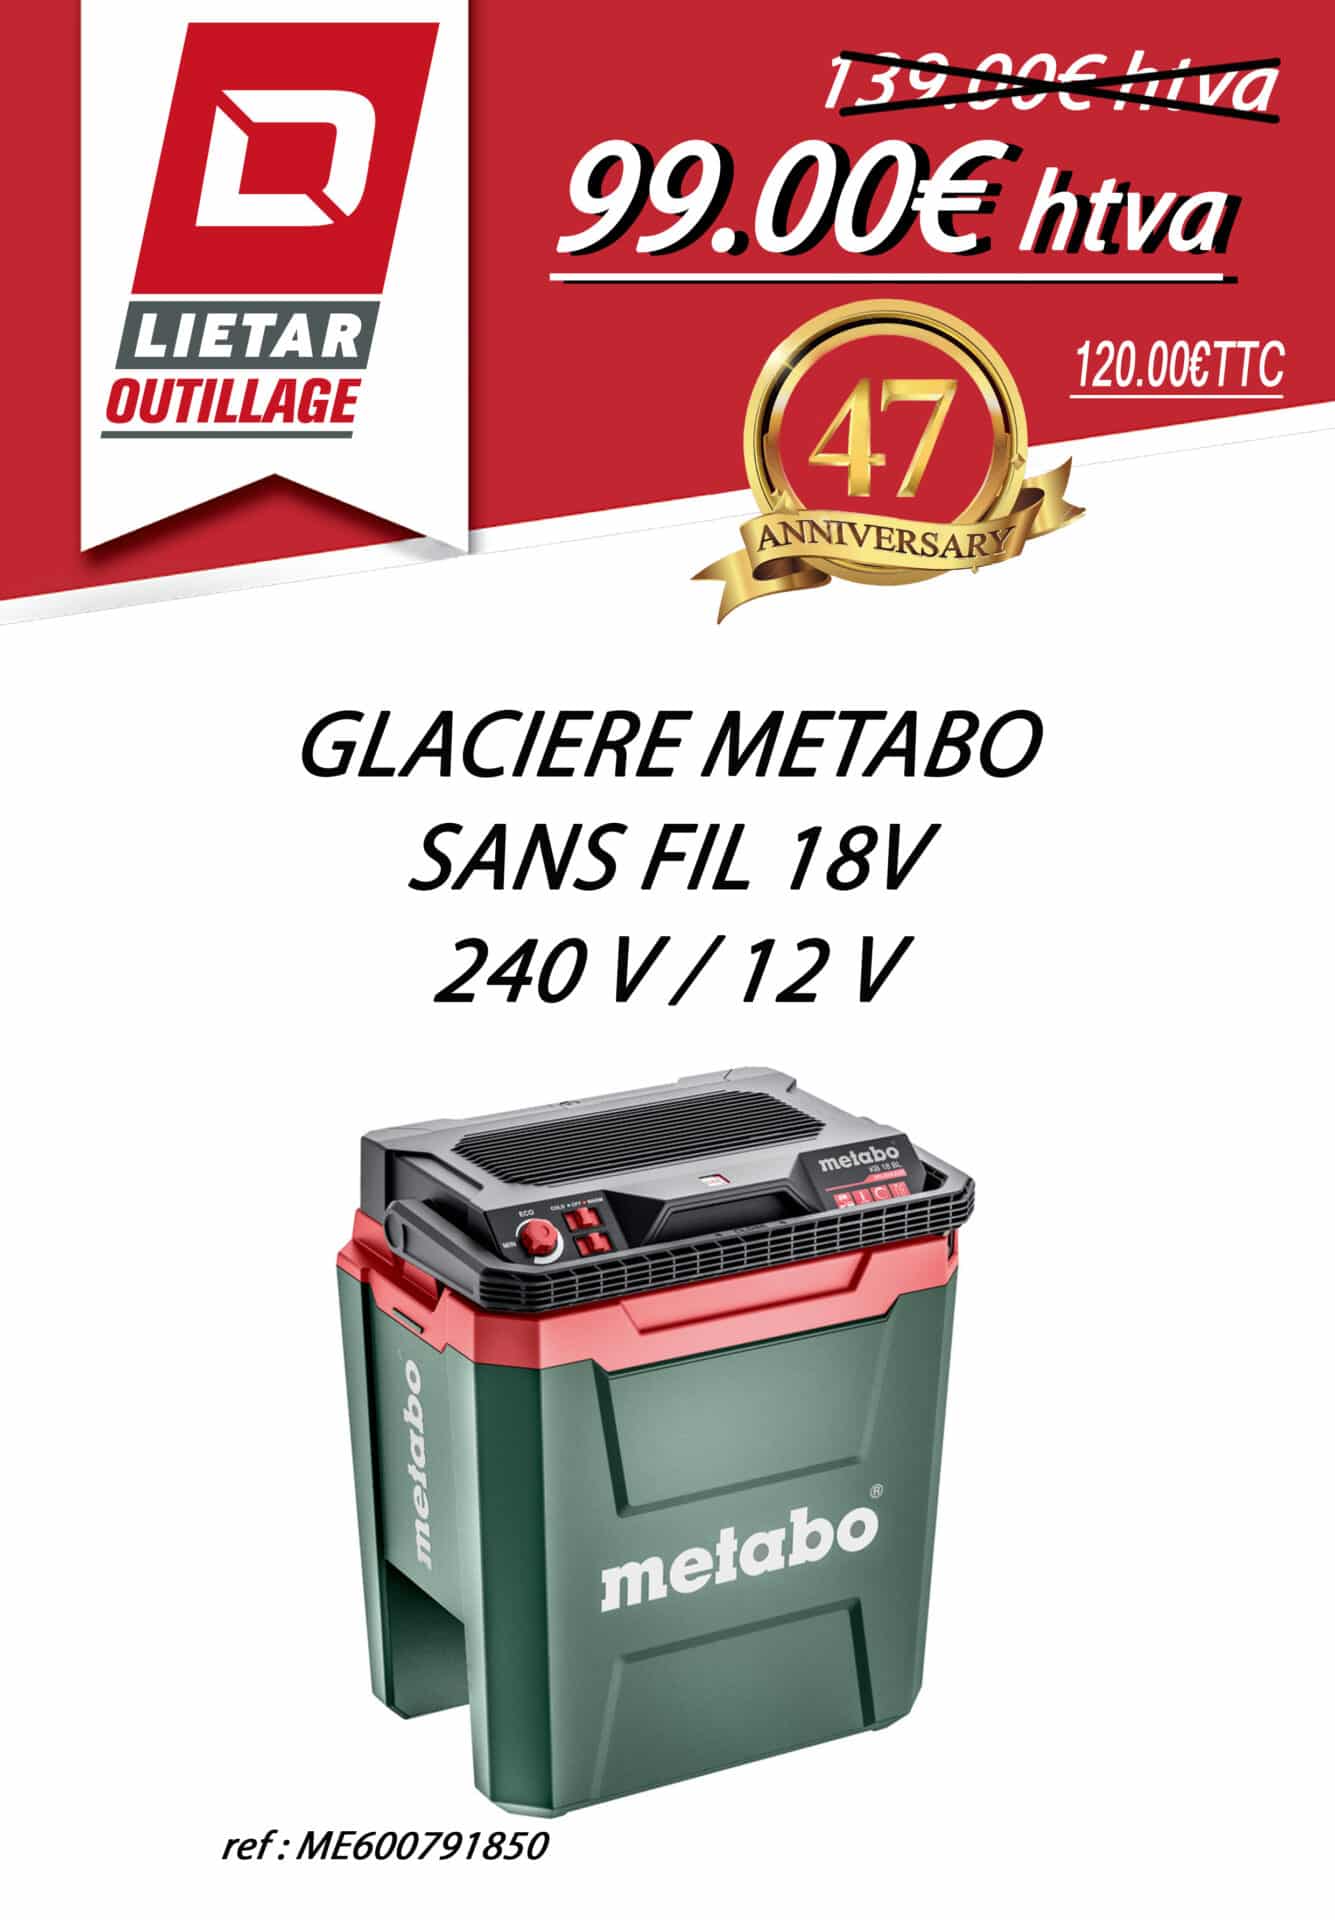 Glacière Metabo sans fil 18V